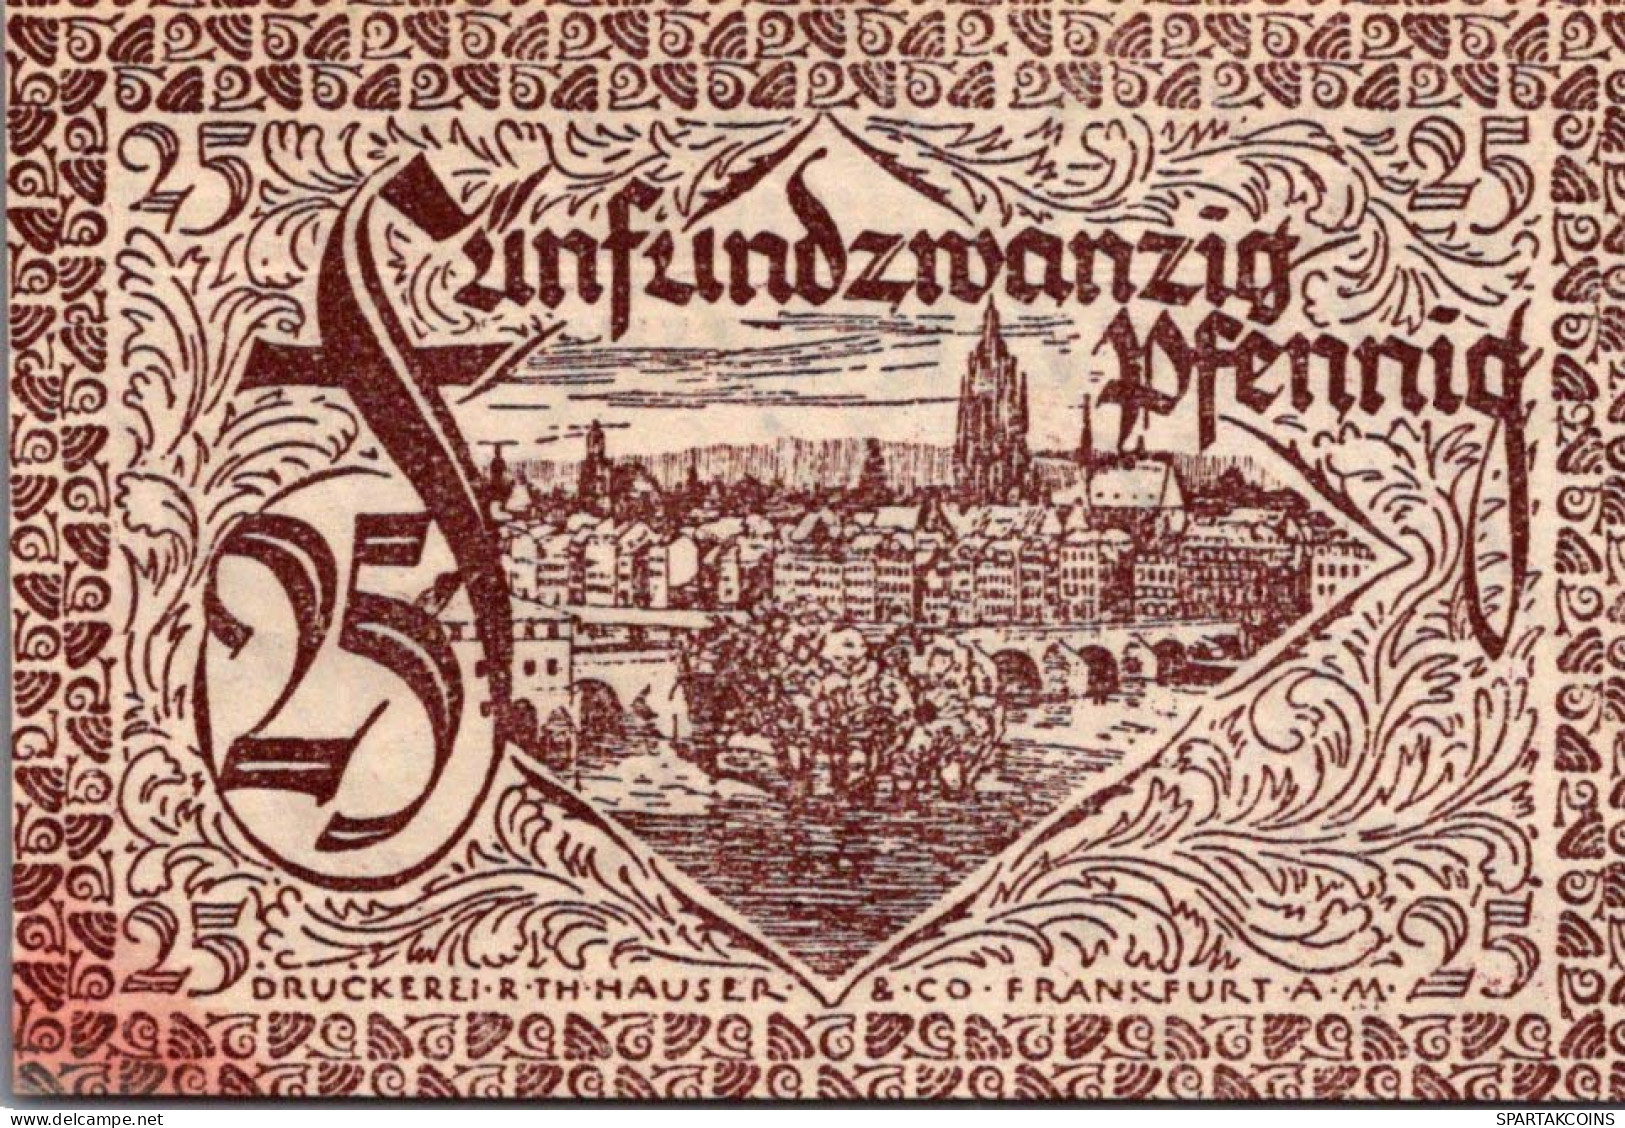 50 PFENNIG 1919 Stadt FRANKFURT AM MAIN Hesse-Nassau UNC DEUTSCHLAND #PI557 - [11] Local Banknote Issues